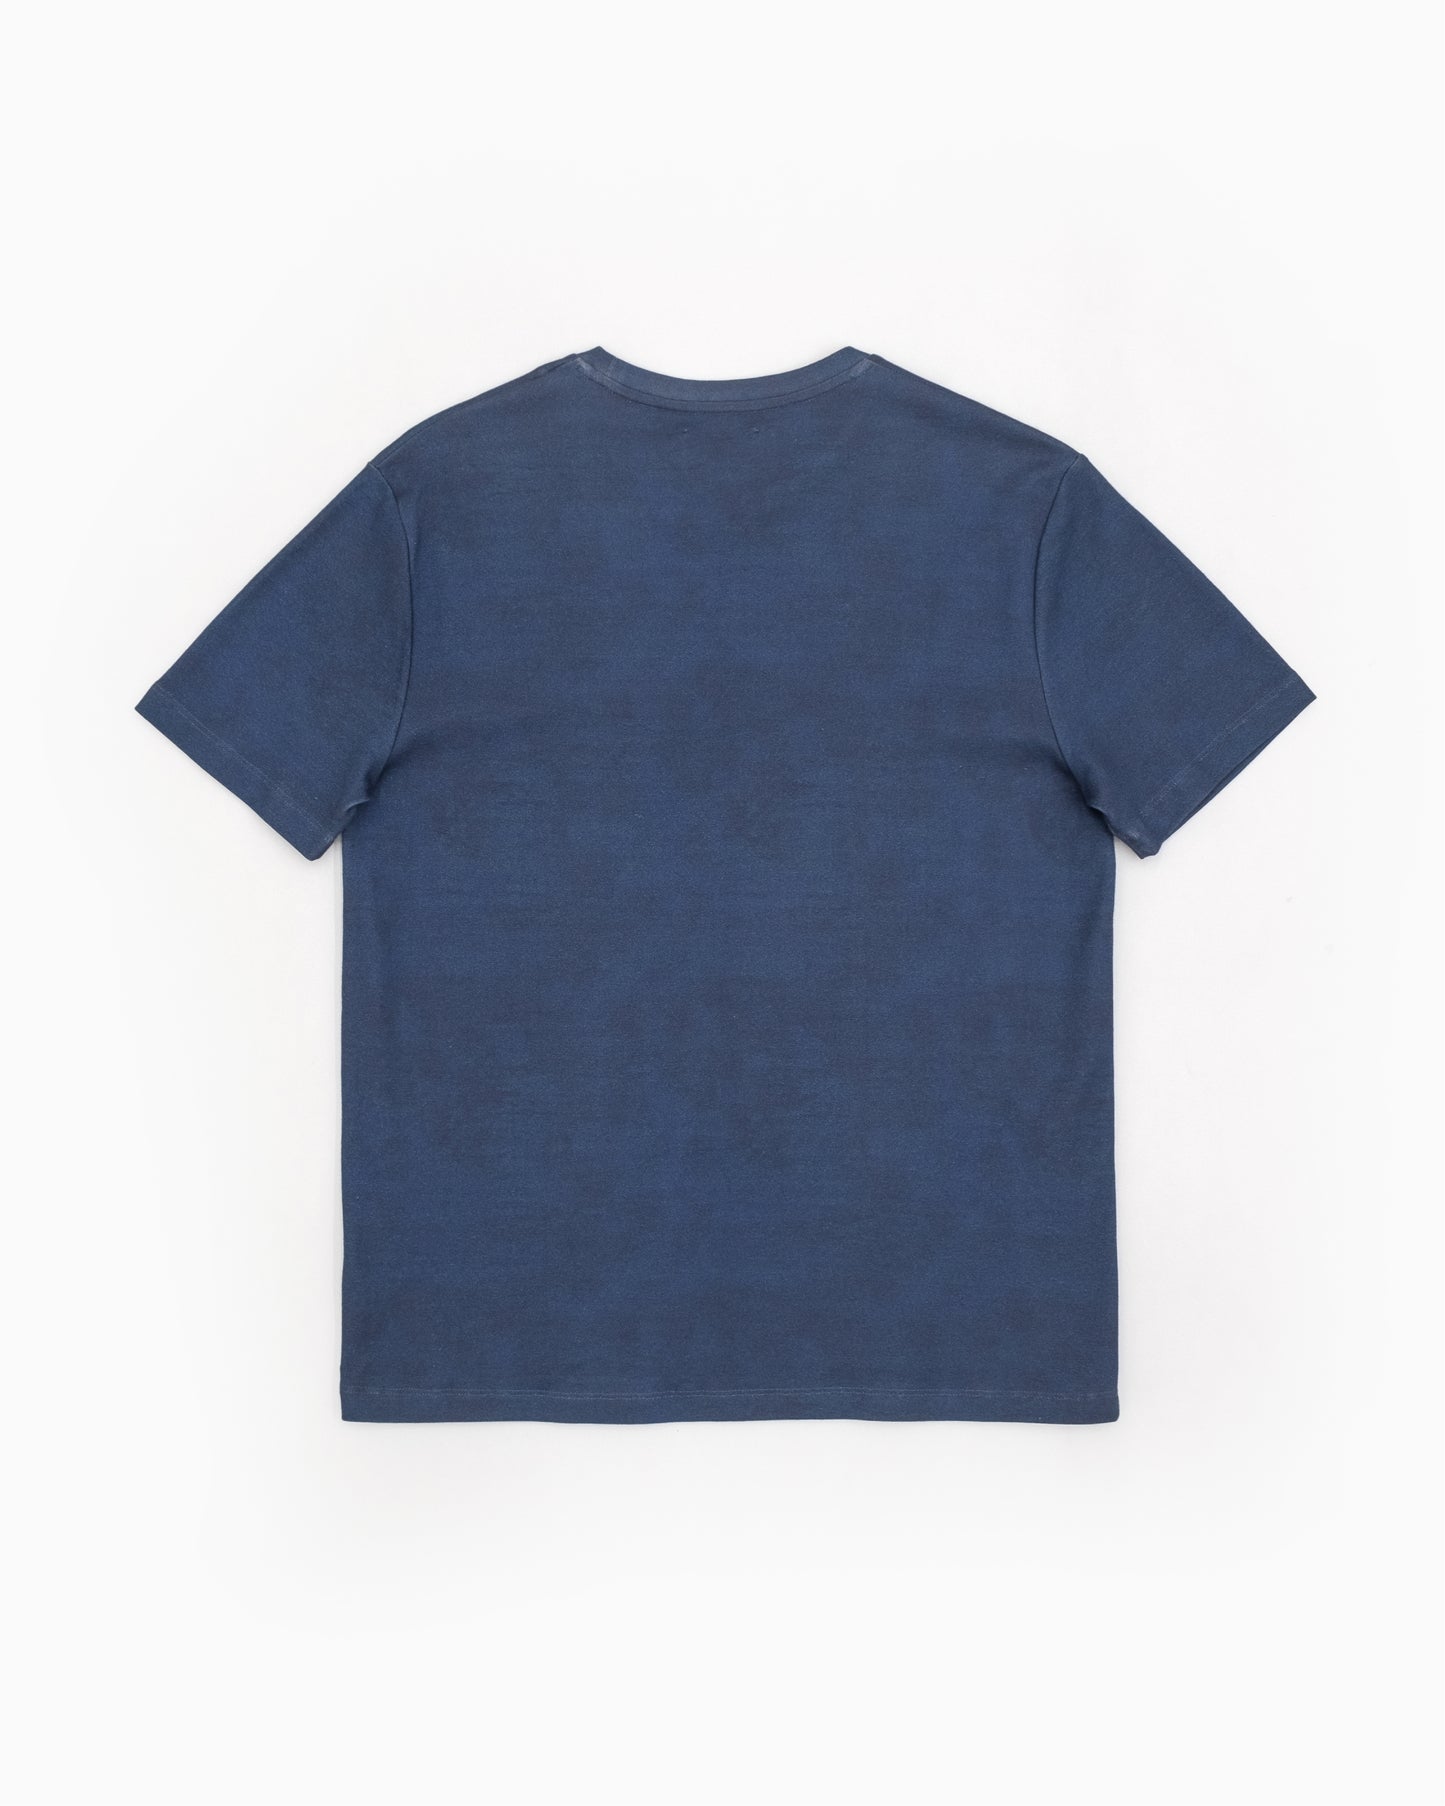 Raf Simons x Brian Calvin T-Shirt - SS13